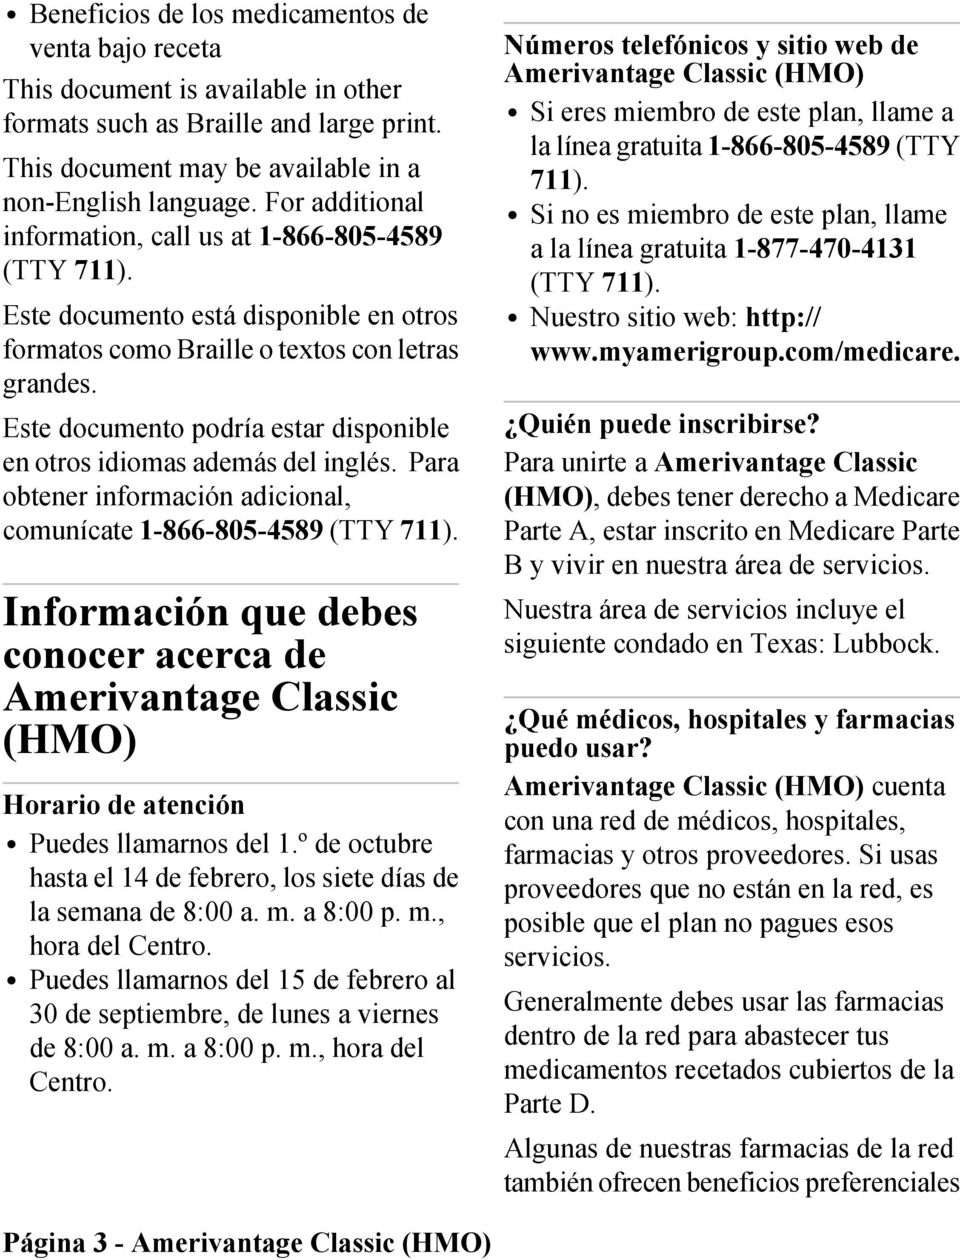 Este documento podría estar disponible en otros idiomas además del inglés. Para obtener información adicional, comunícate 1-866-805-4589 (TTY 711).